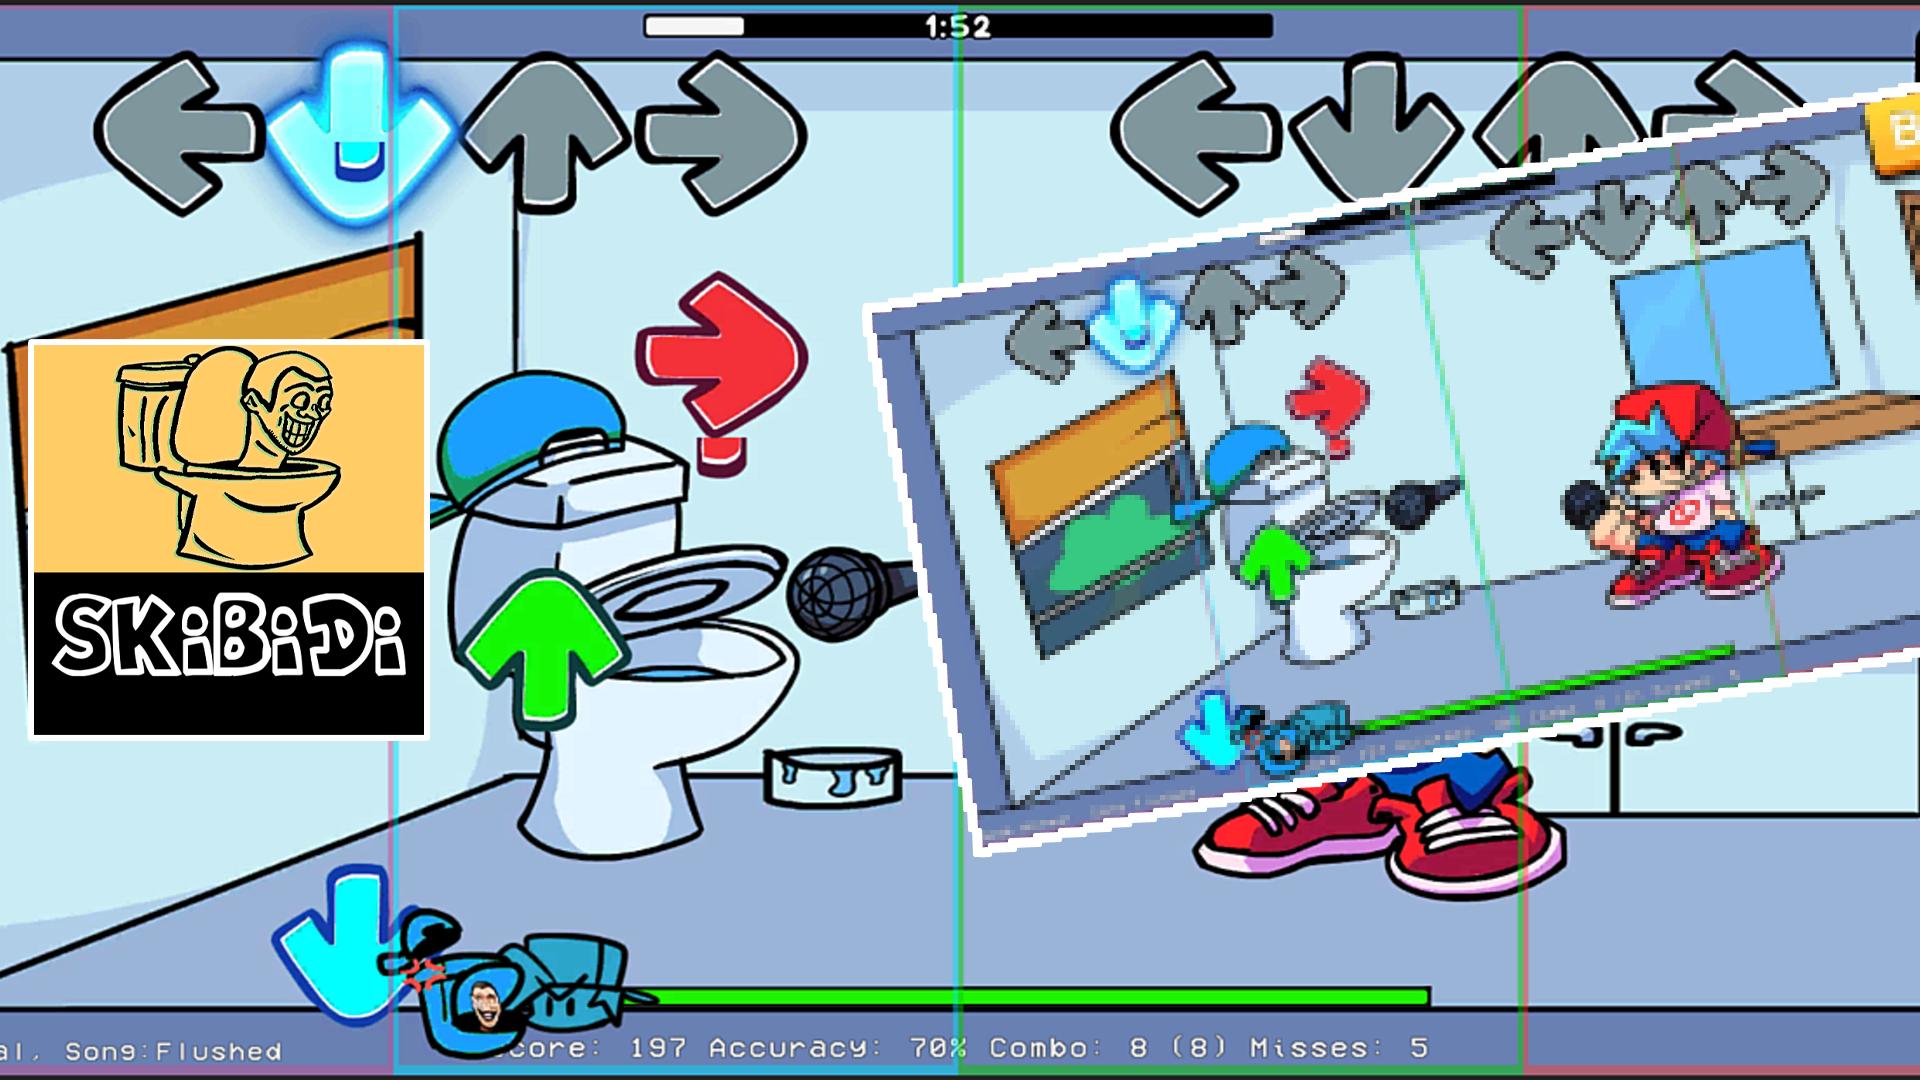 Скиби туалет в графическом редакторе. Файлы игры туалет лаборатория. Защита башни туалета Skibi коды. Взломанная игра туалет лаборатория.